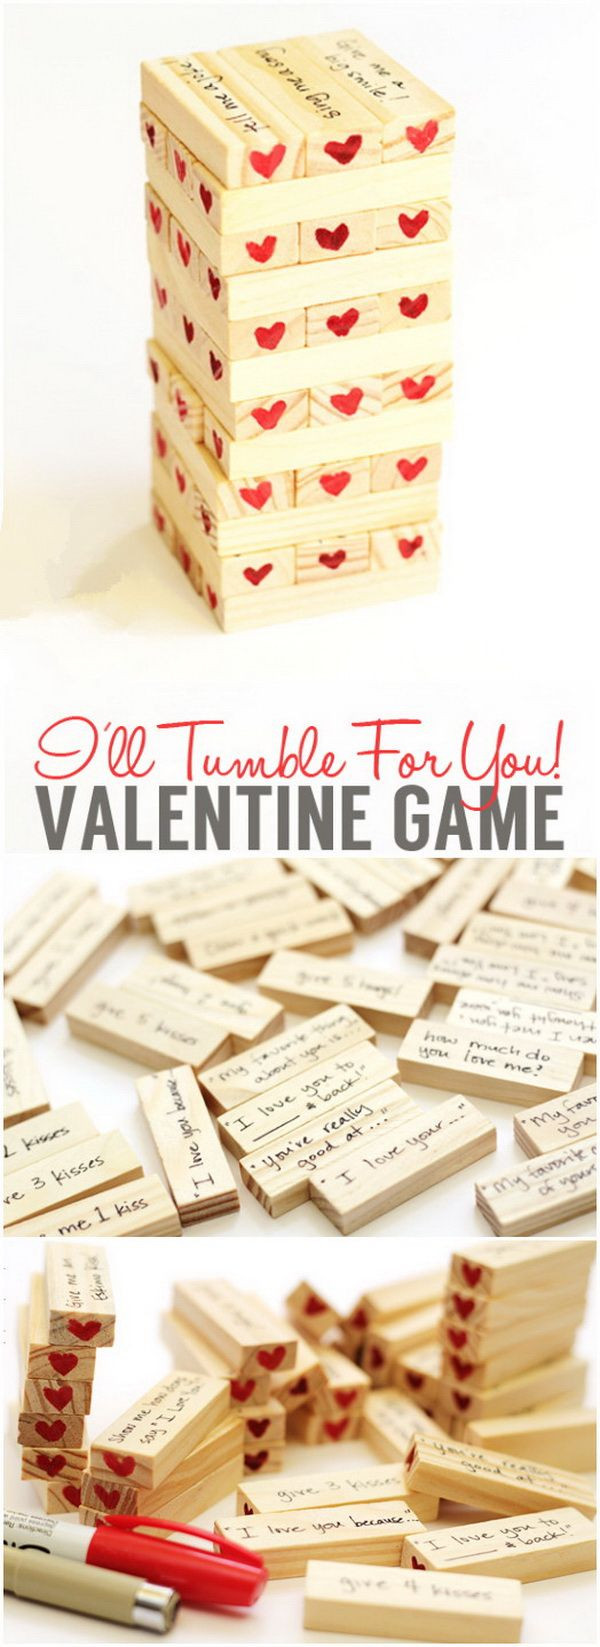 Gift Ideas For Boyfriend On Valentine'S Day
 Easy DIY Valentine s Day Gifts for Boyfriend